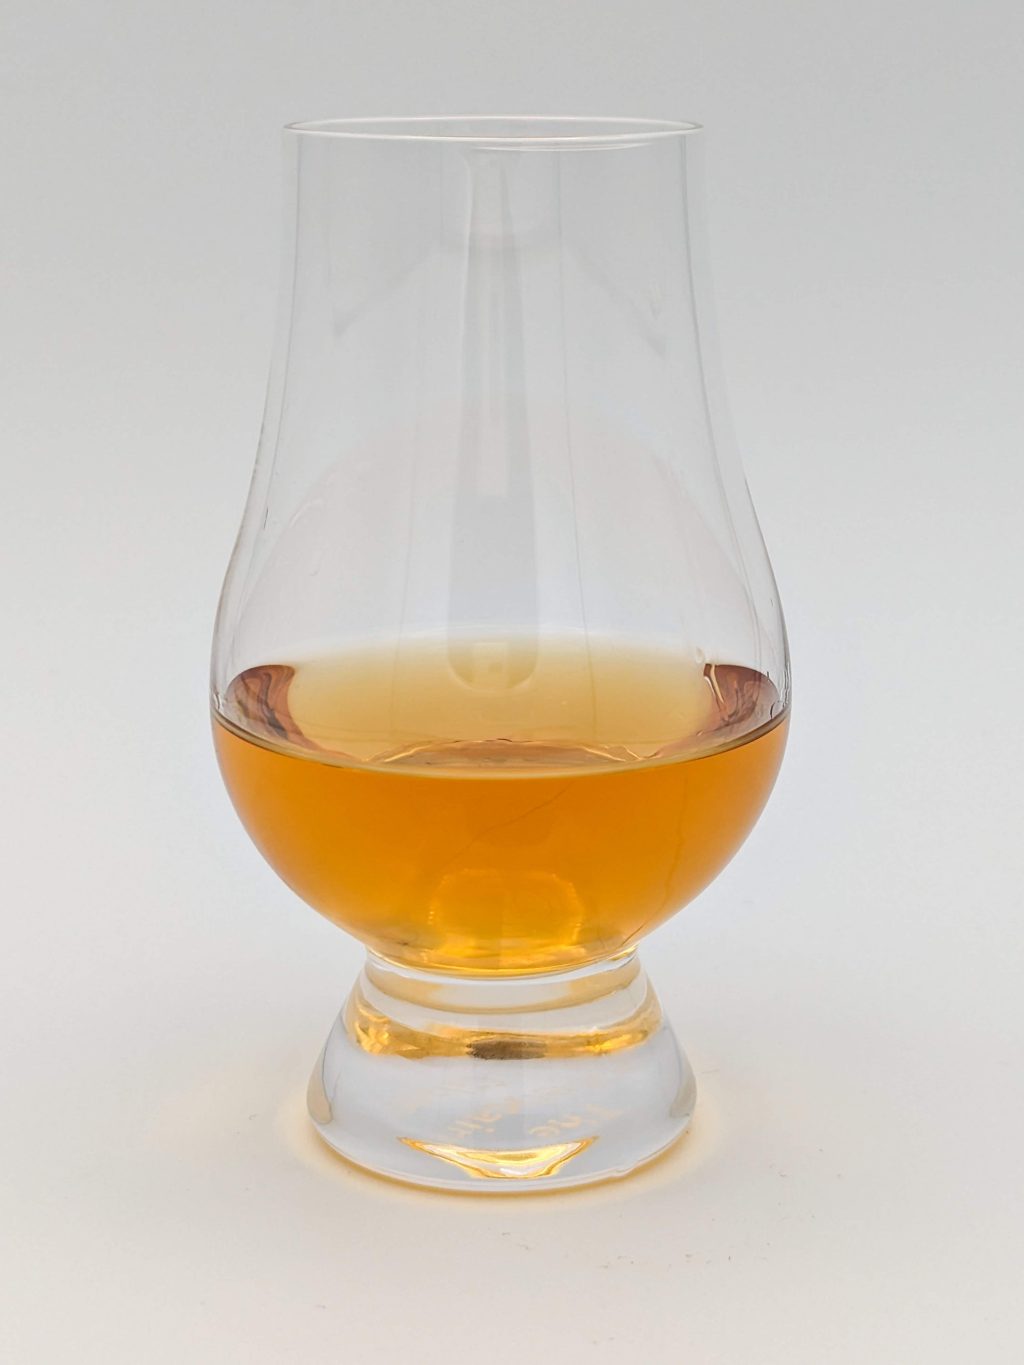 golden liquid in a glencairn glass